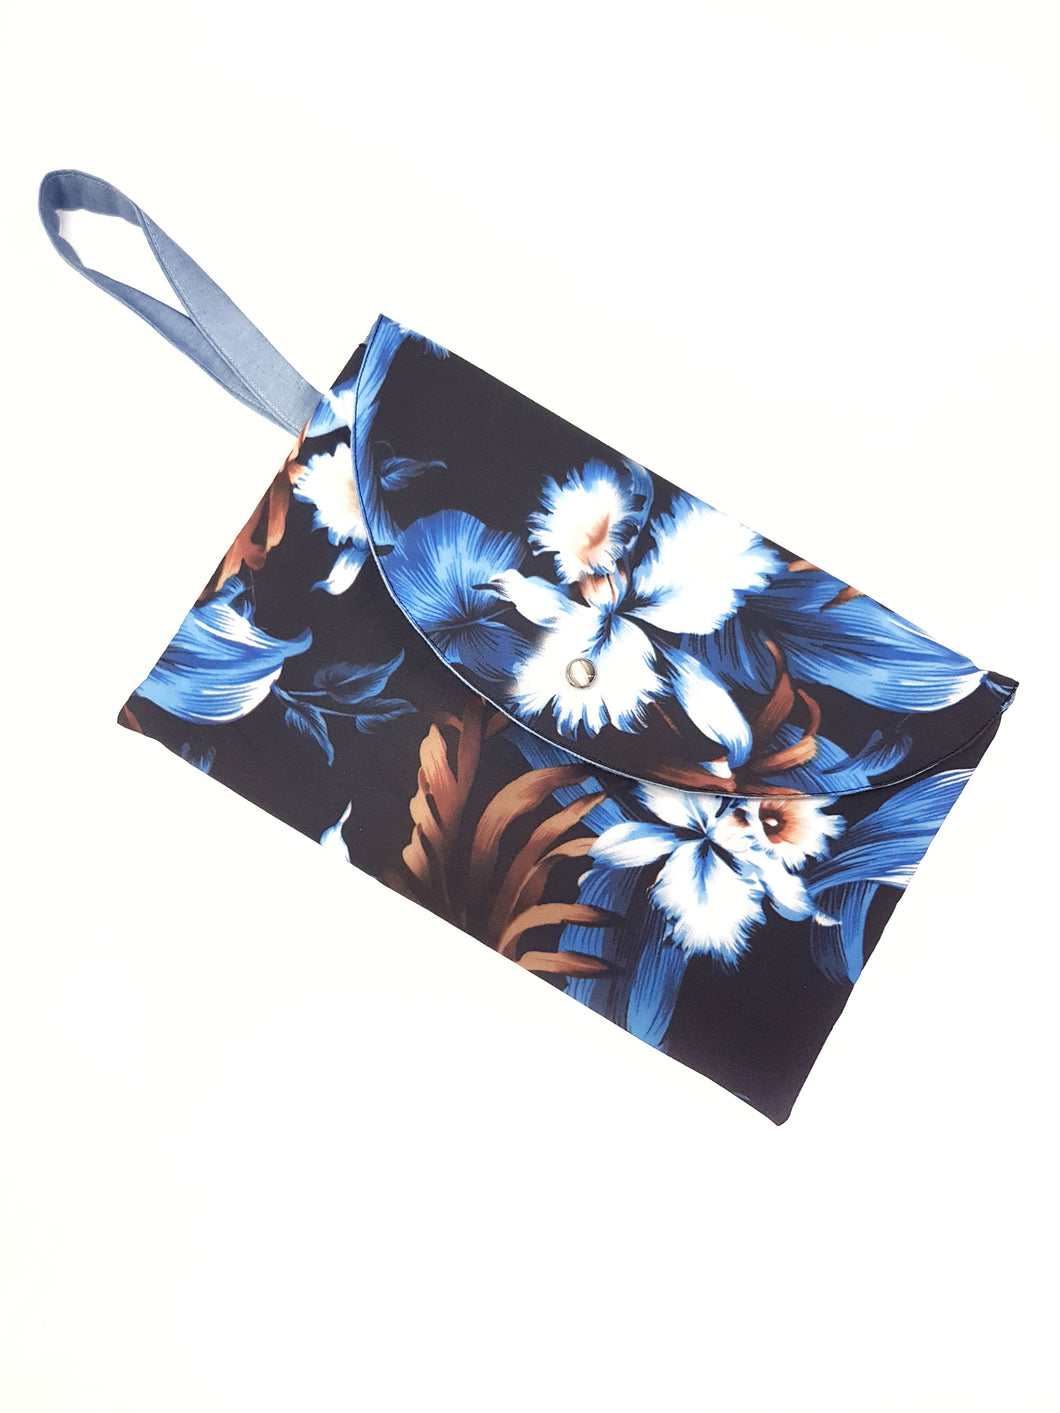 Pochette in tessuto fashion design dark flower Made in Italy